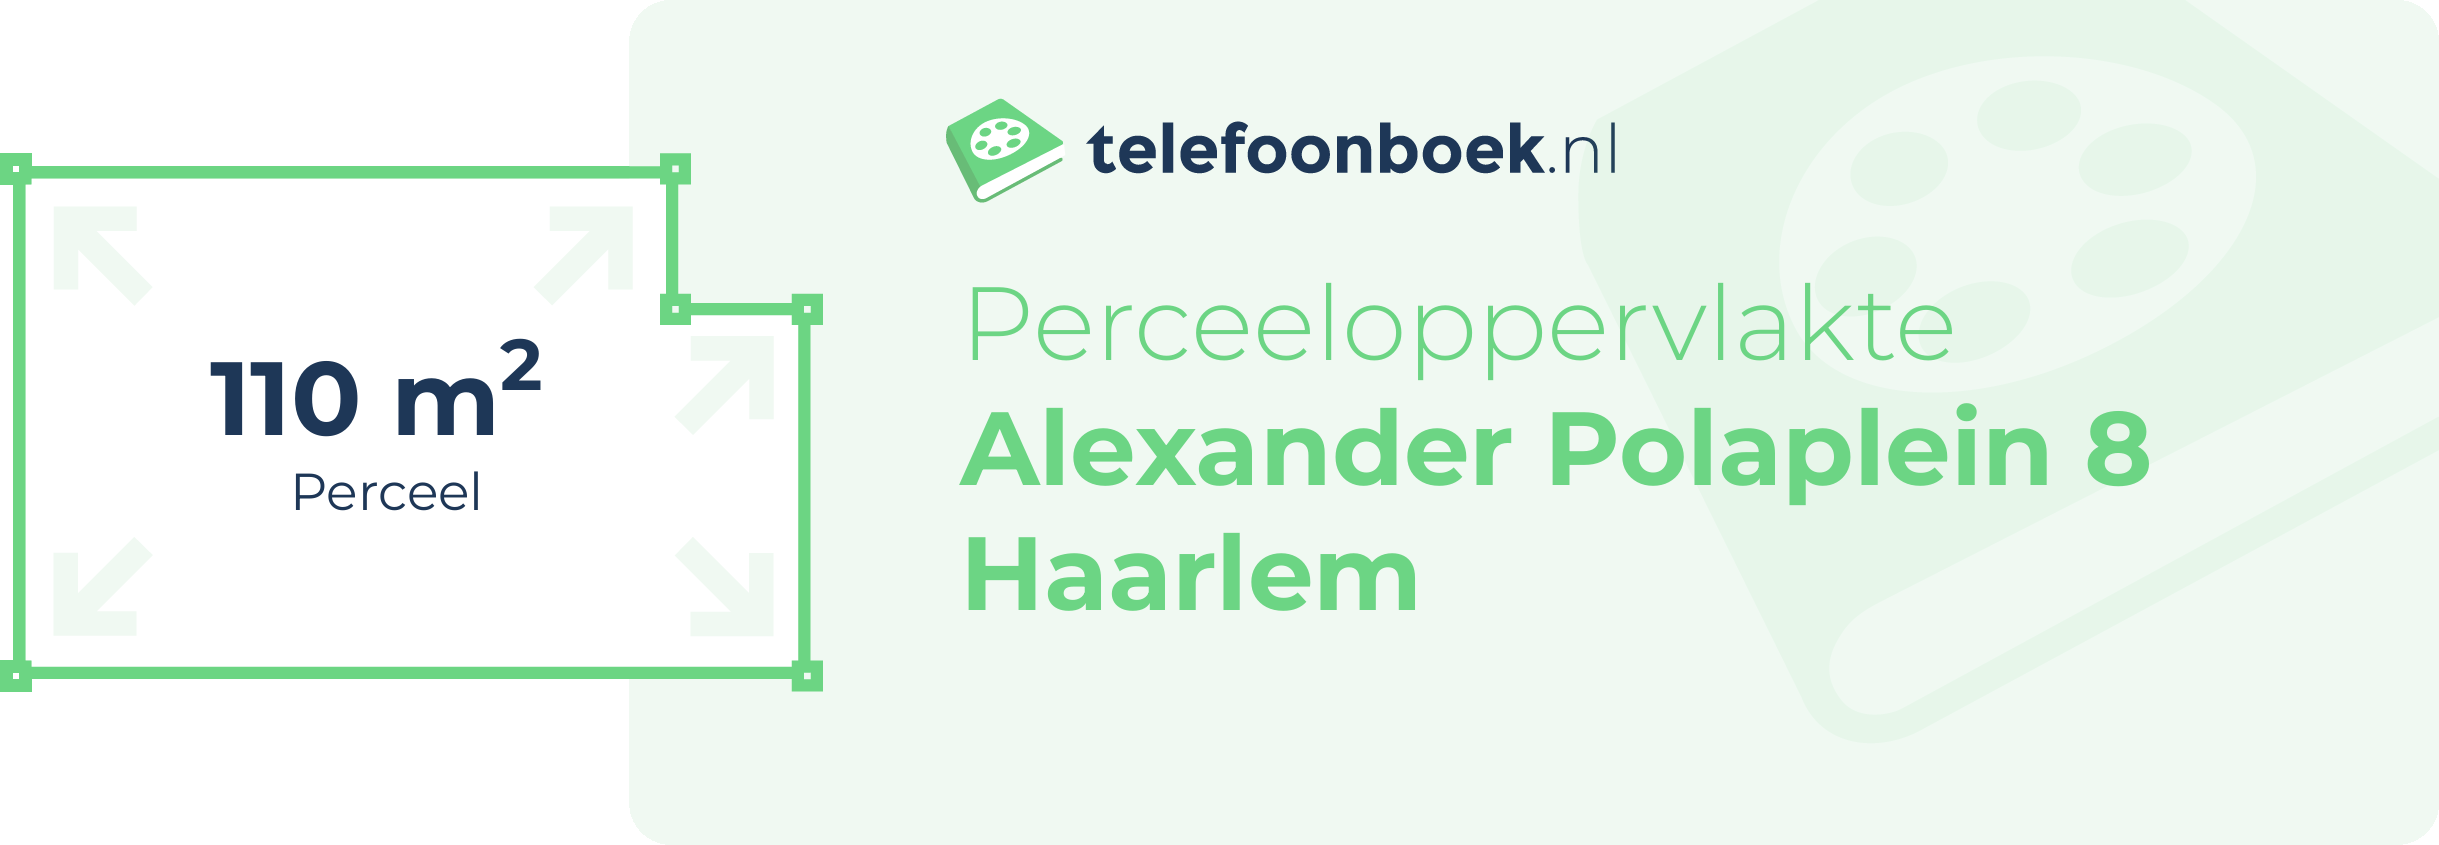 Perceeloppervlakte Alexander Polaplein 8 Haarlem